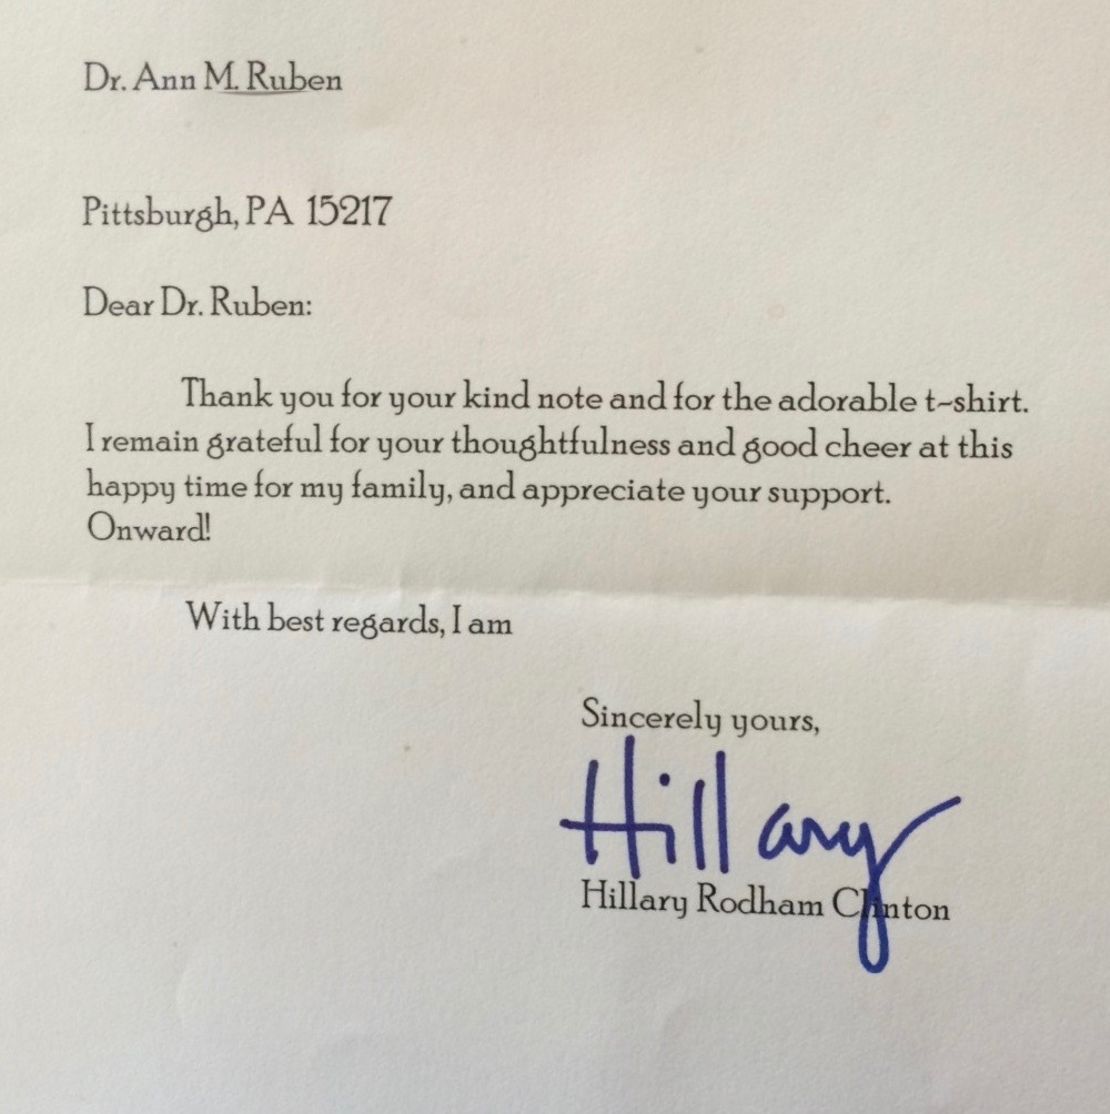 Clinton letter